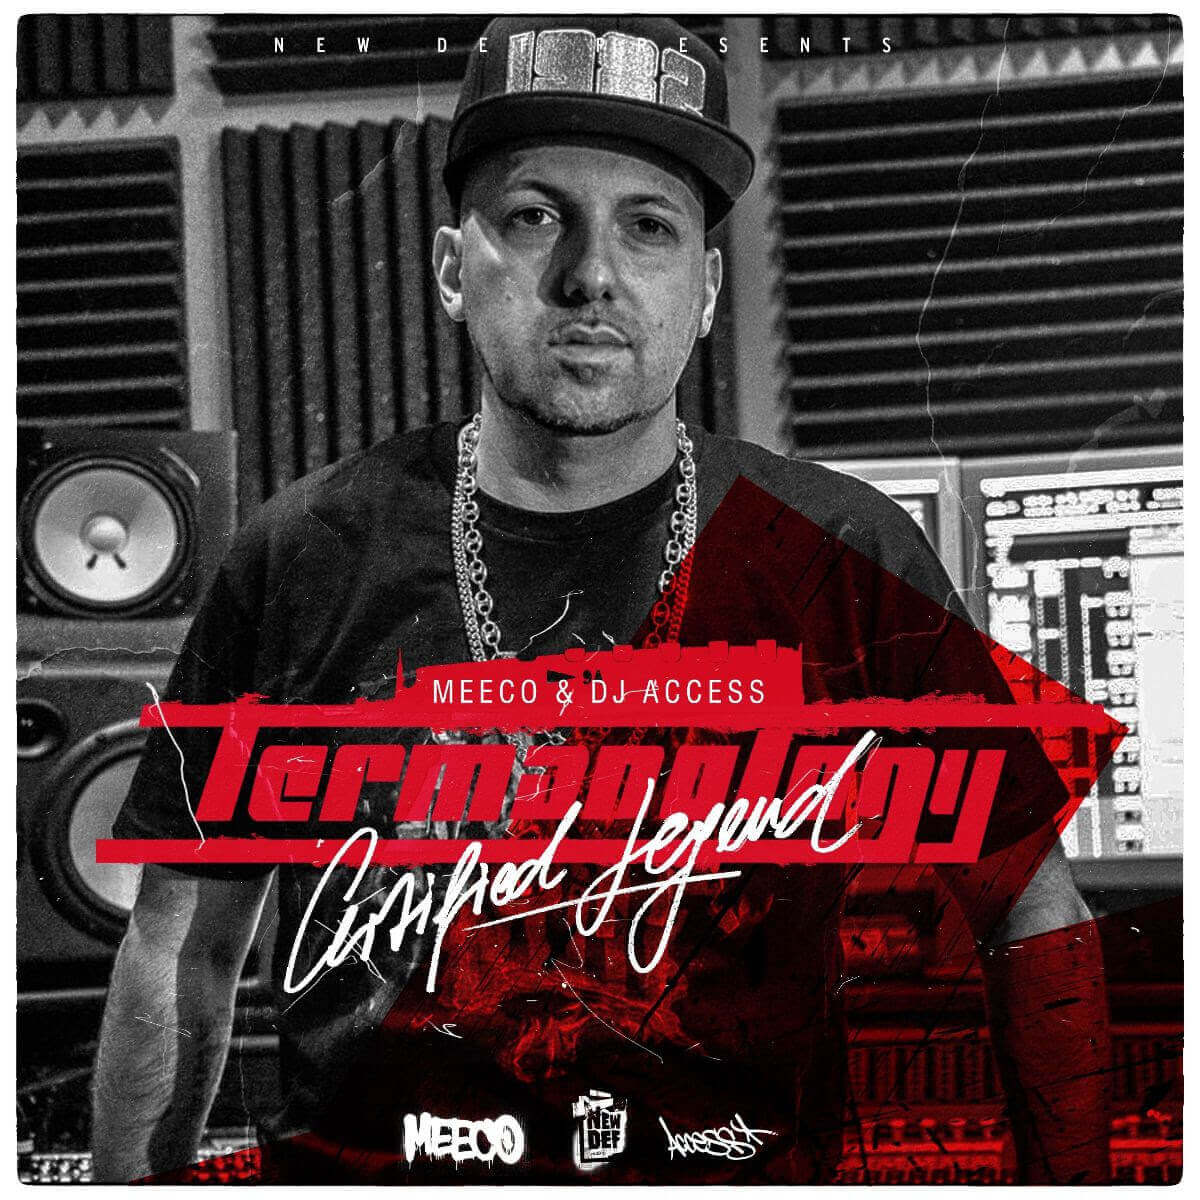 MEECO & DJ ACCESS ft. Termanology presentan "Certified Legend"